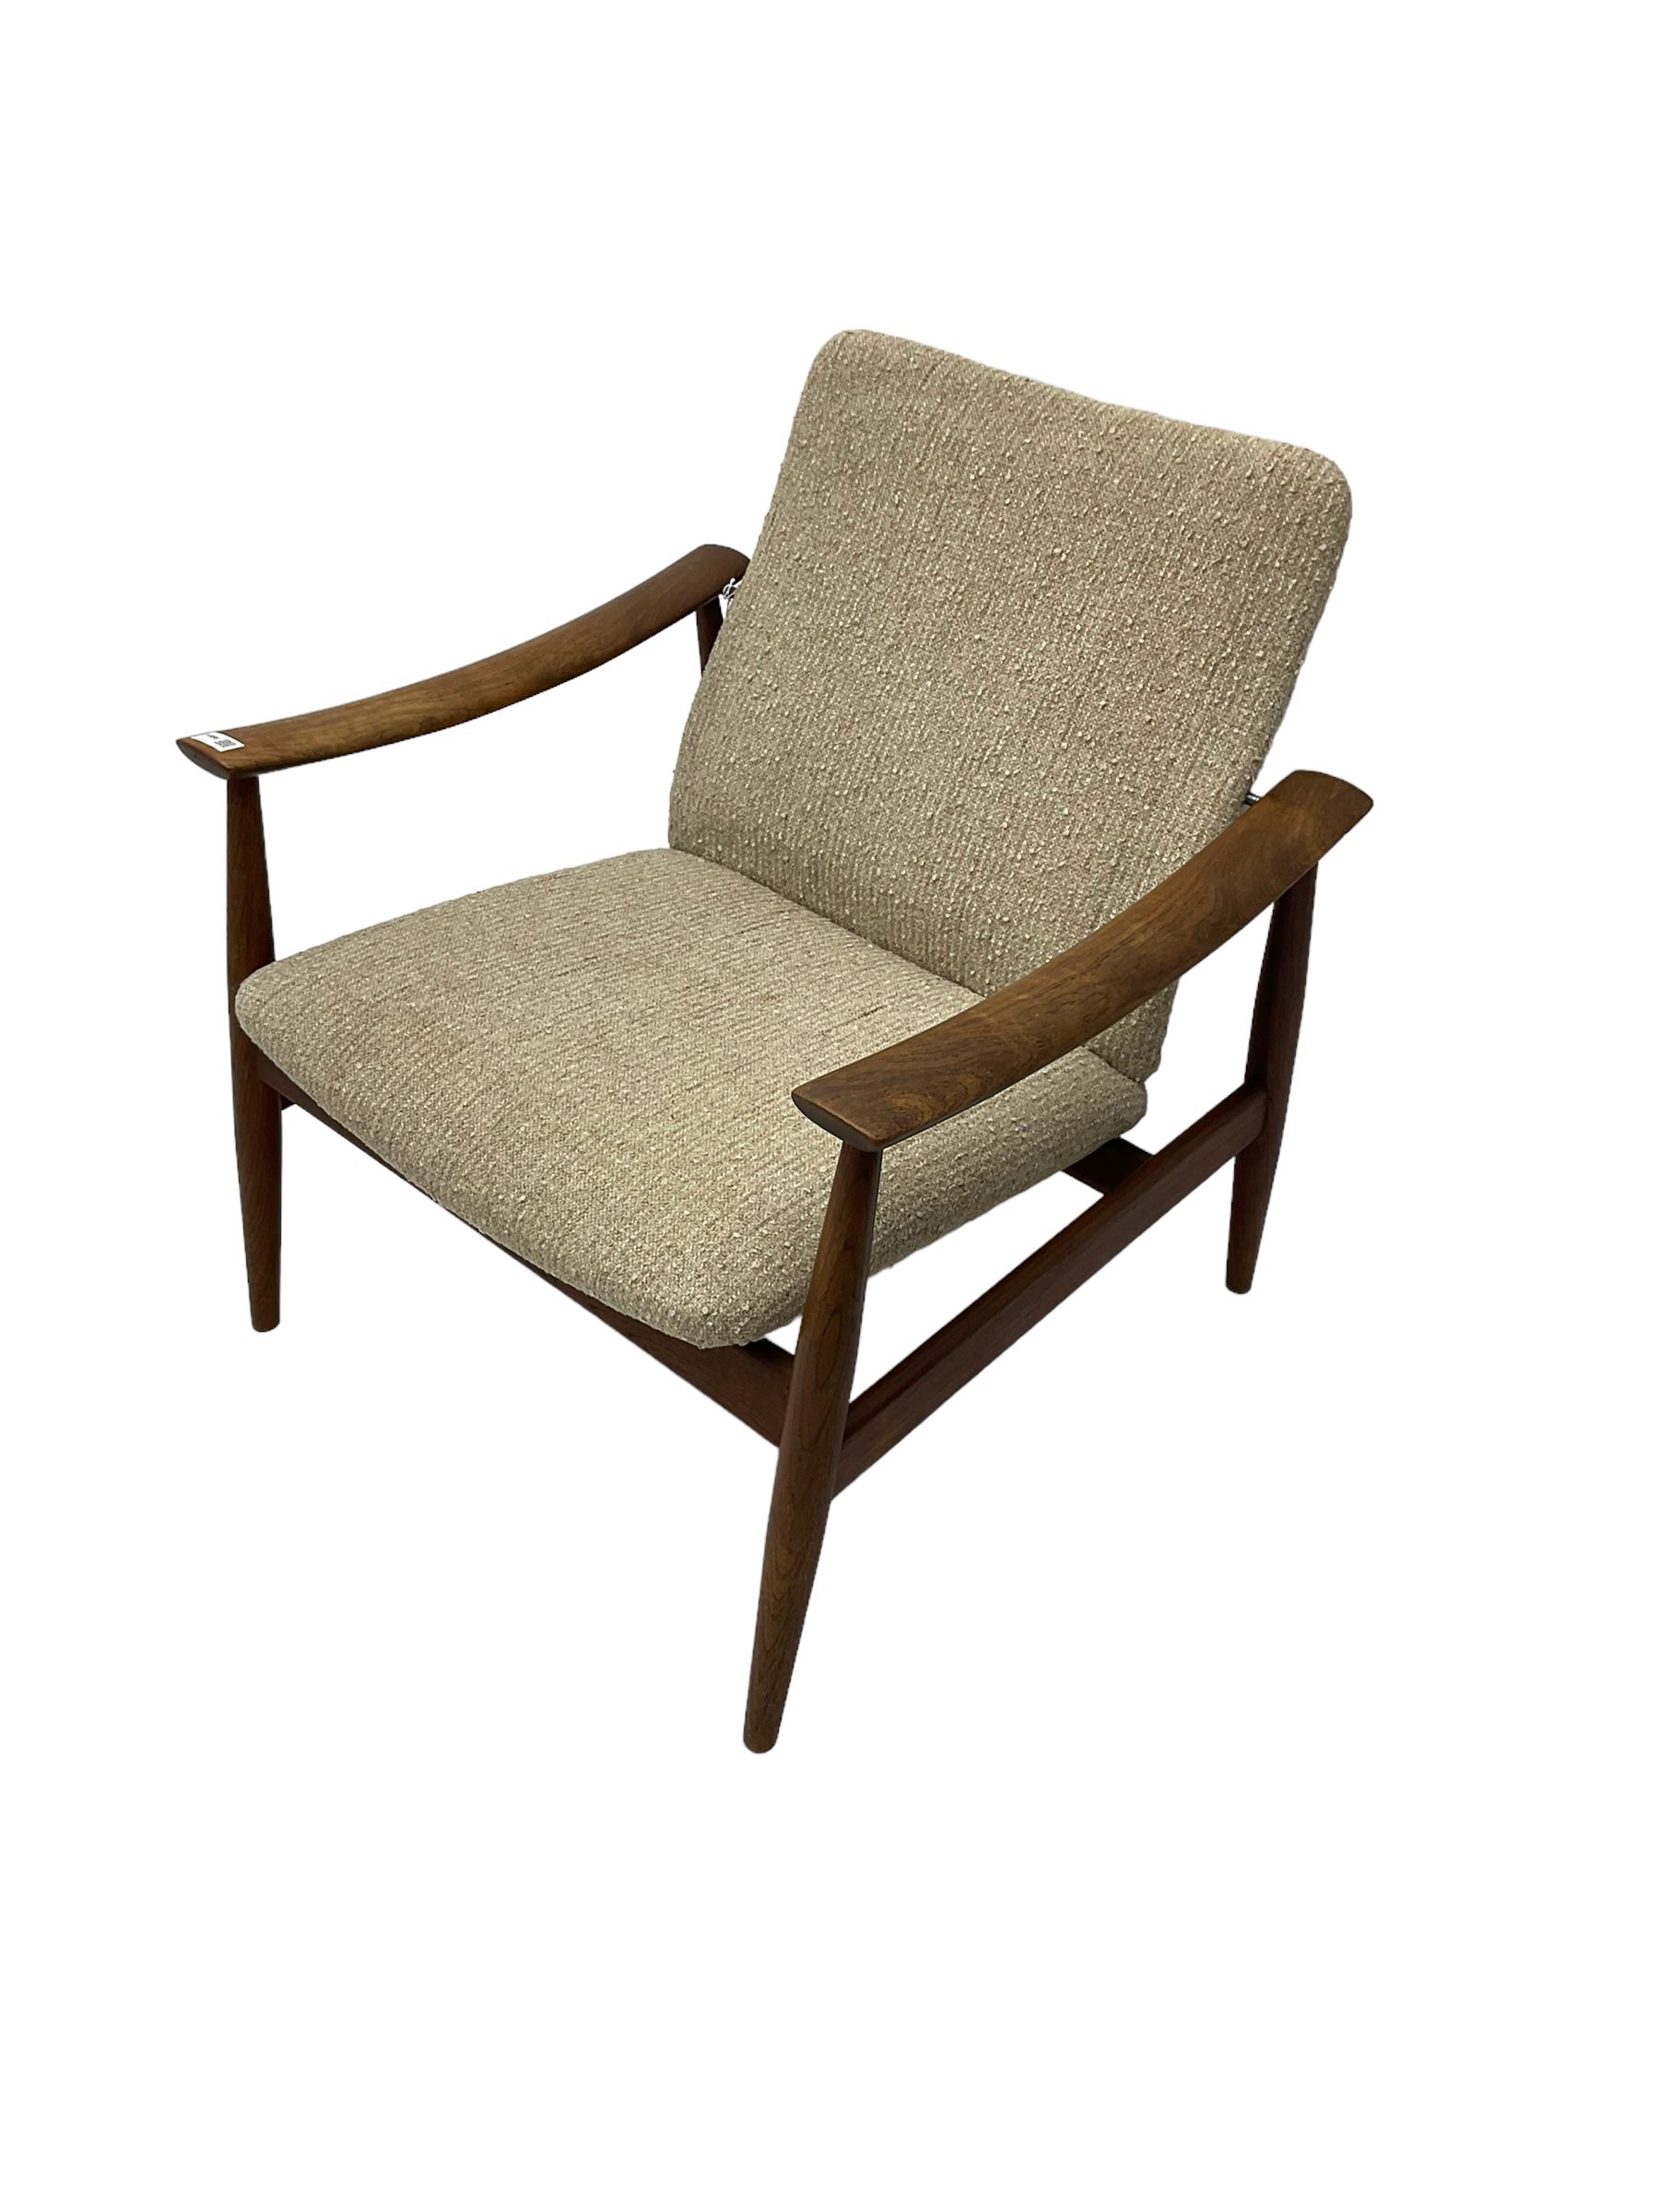 Finn Juhl for France & Son - 'model 138' mid-20th century teak easy chair upholstered in beige fabri - Image 10 of 14